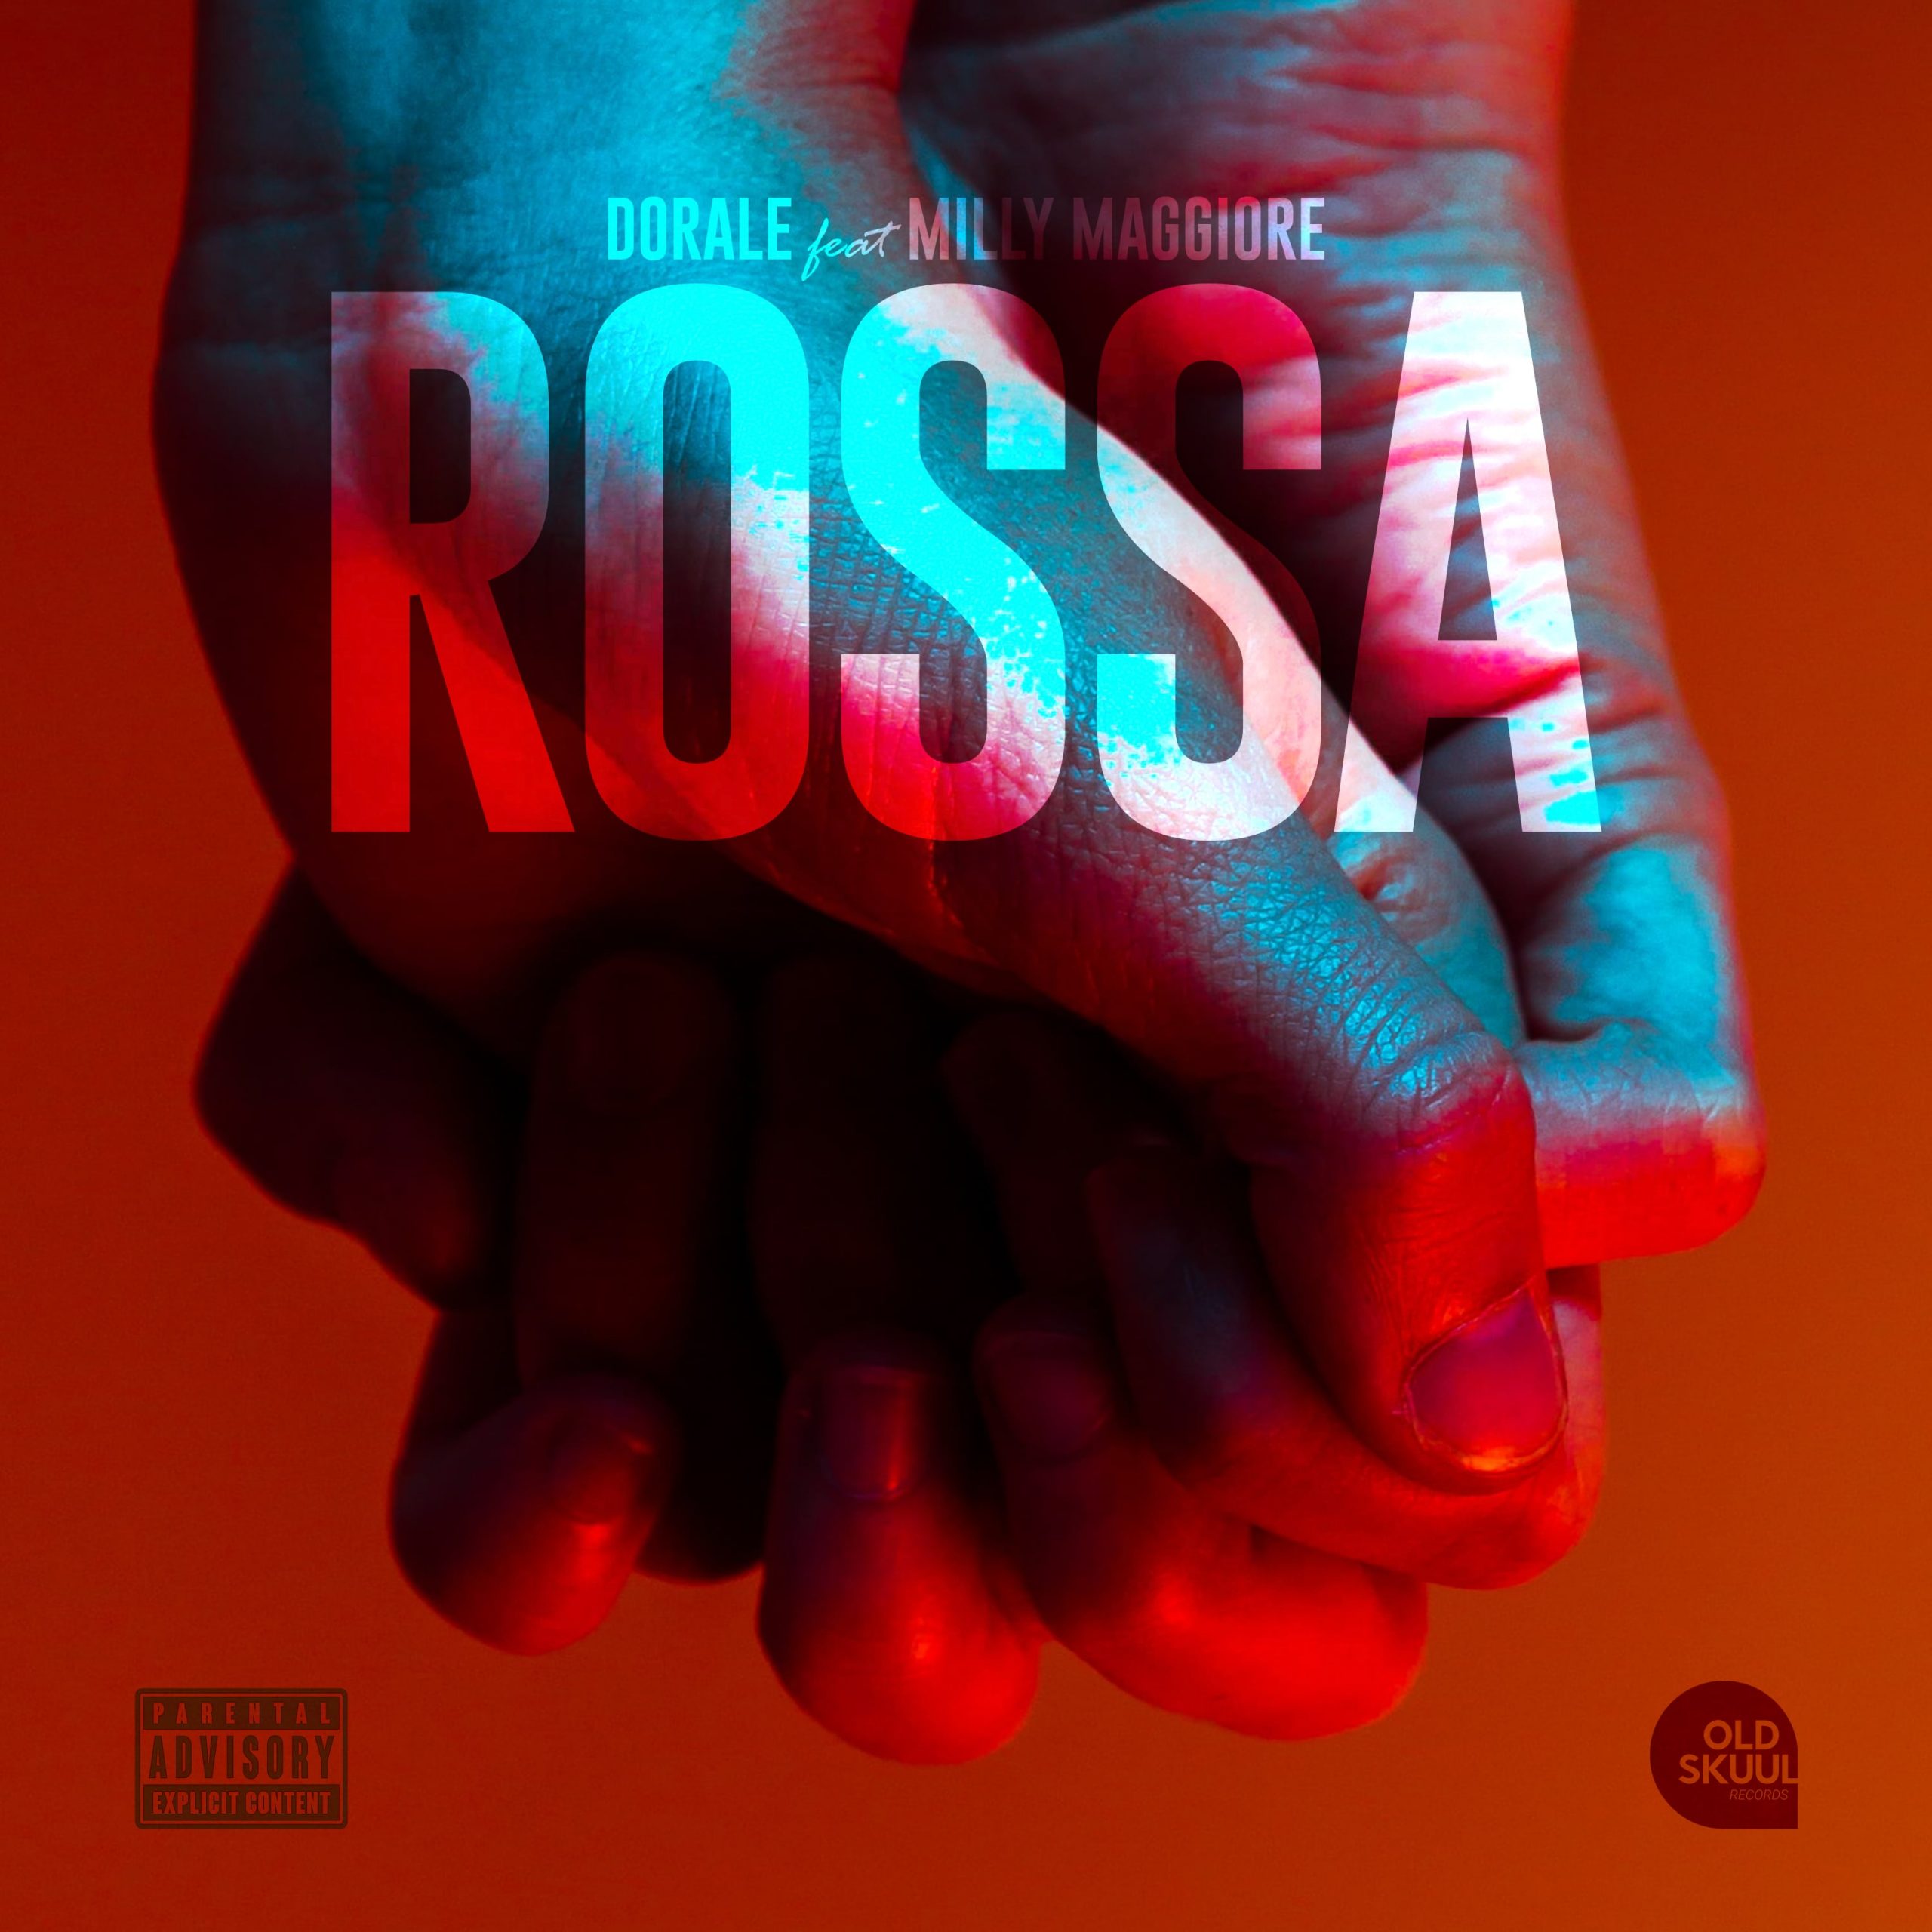 Dorale pubblica il suo nuovo singolo “Rossa” feat. Milly Maggiore